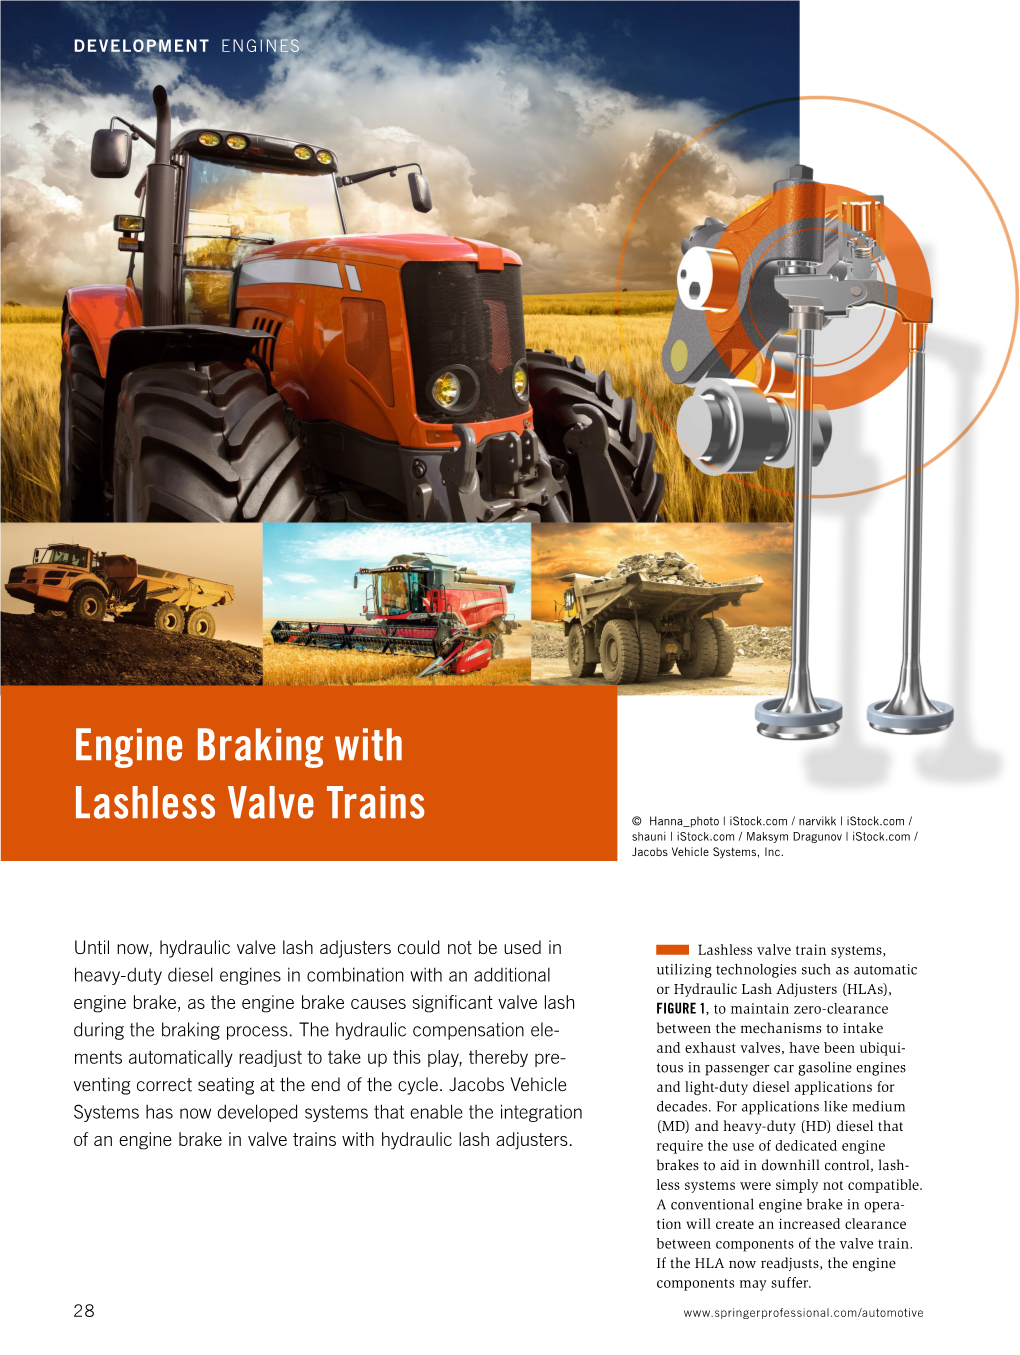 Engine Braking with Lashless Valve Trains